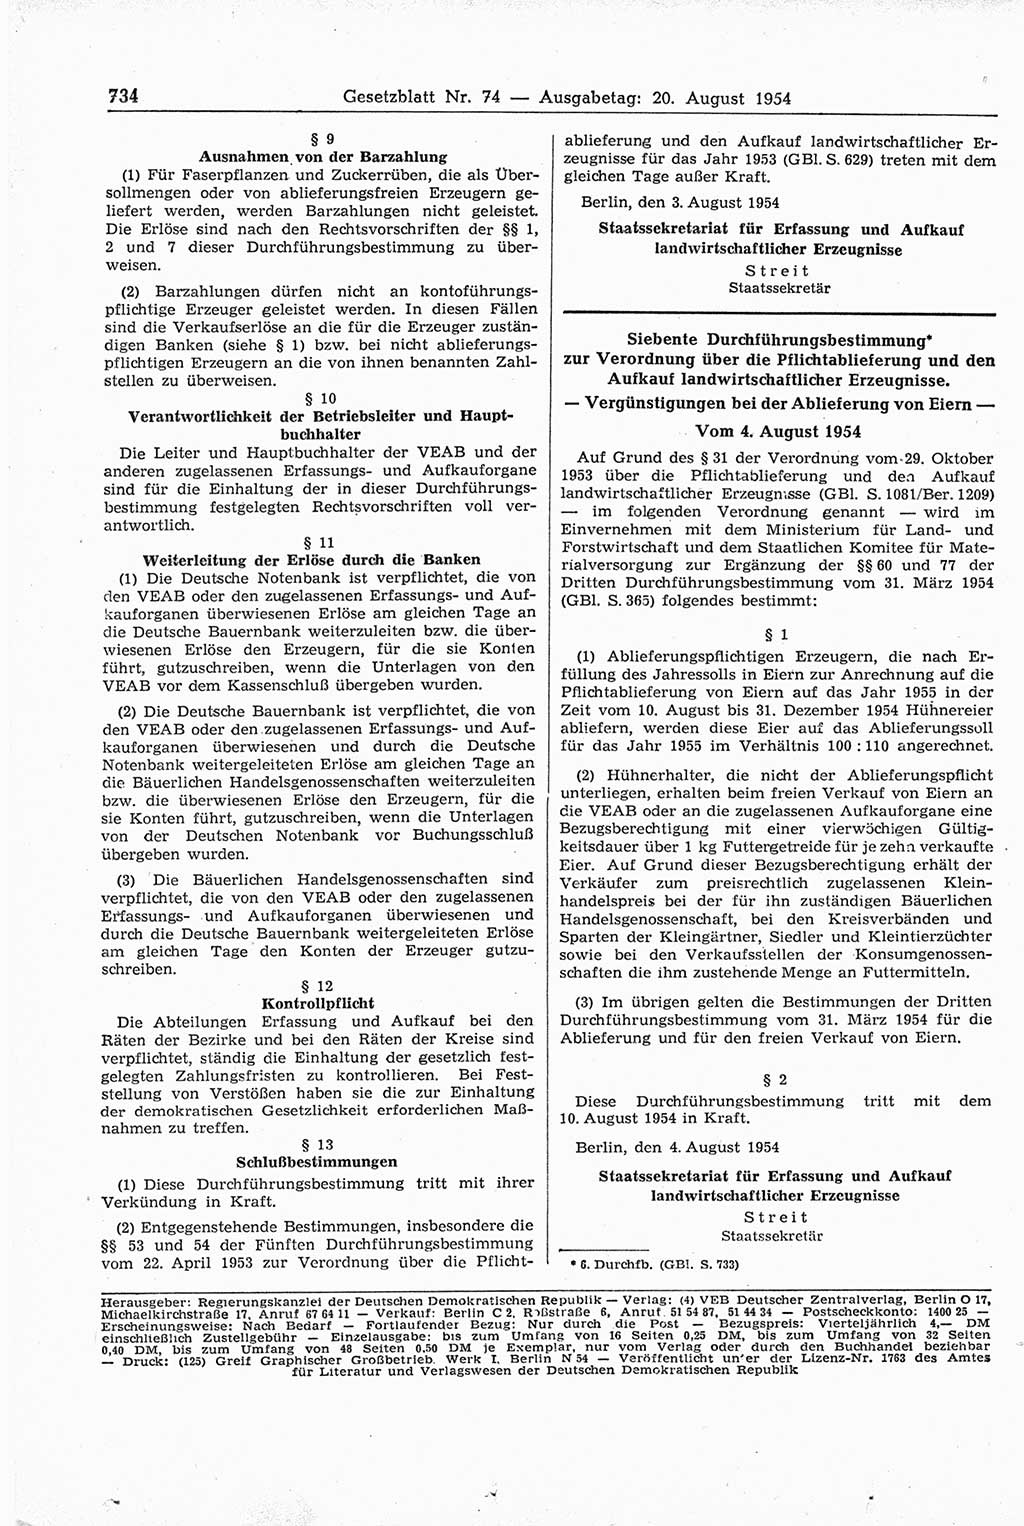 Gesetzblatt (GBl.) der Deutschen Demokratischen Republik (DDR) 1954, Seite 734 (GBl. DDR 1954, S. 734)